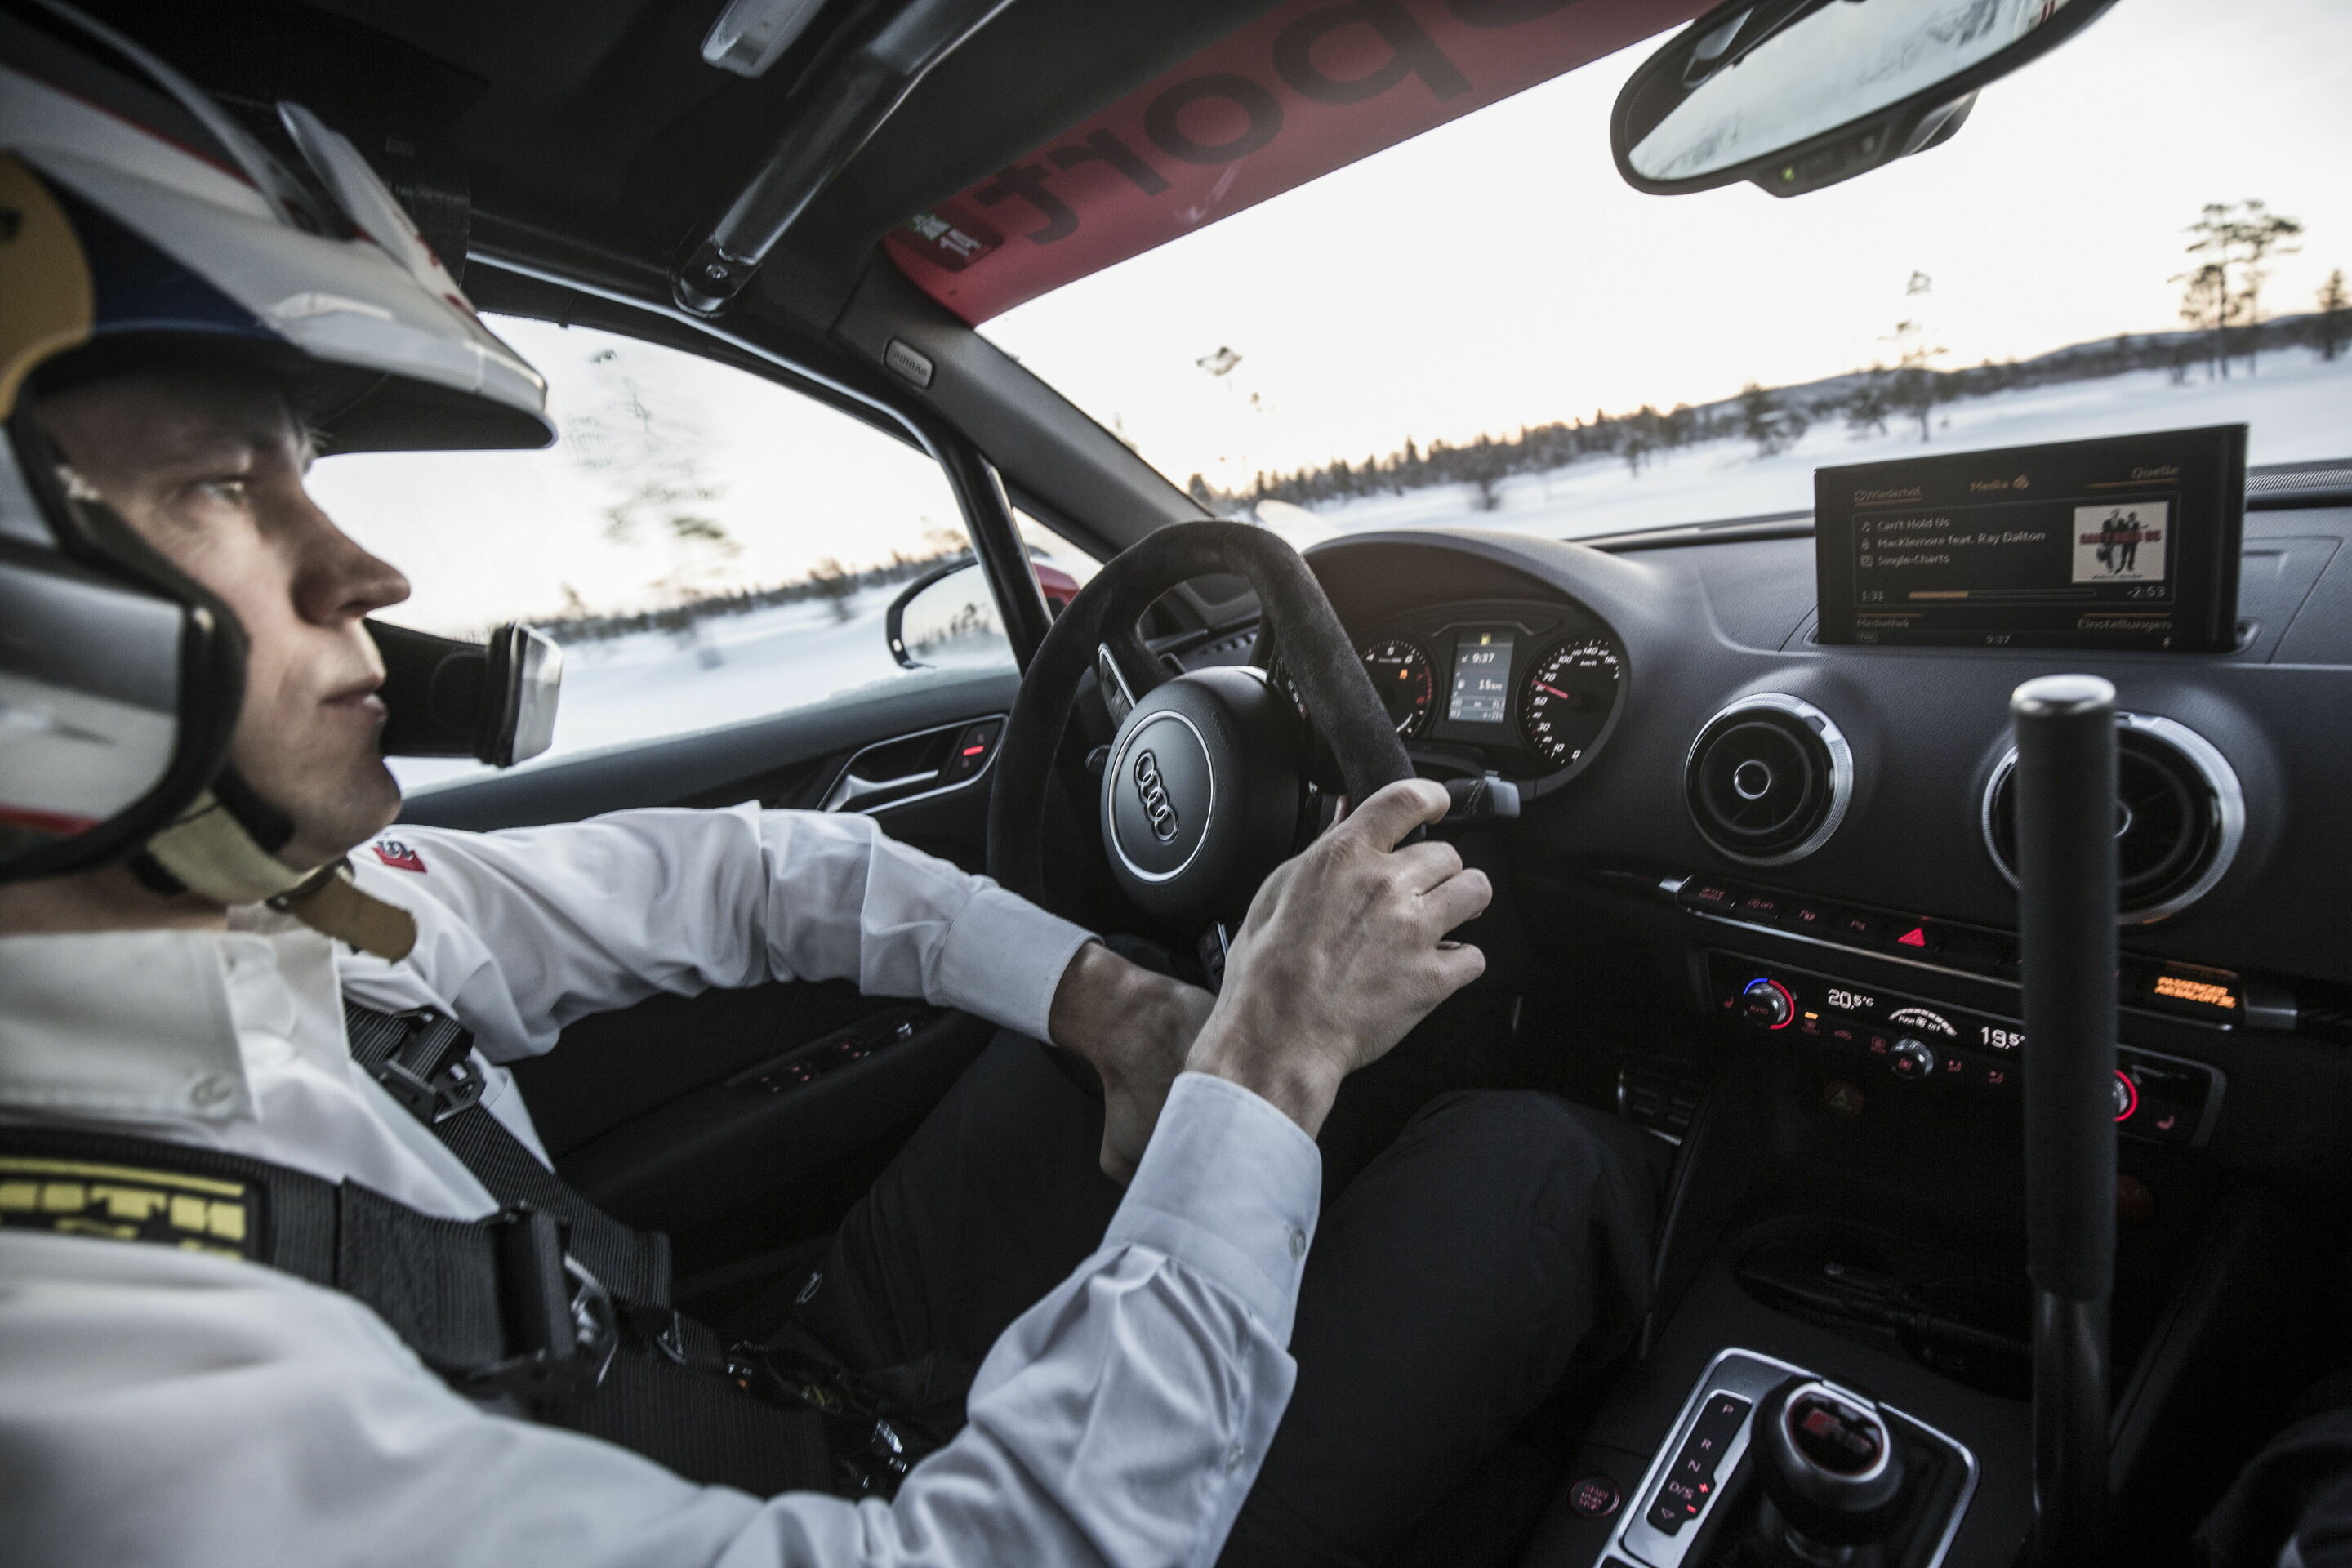 Audi-Rennfahrer und RS-Modelle